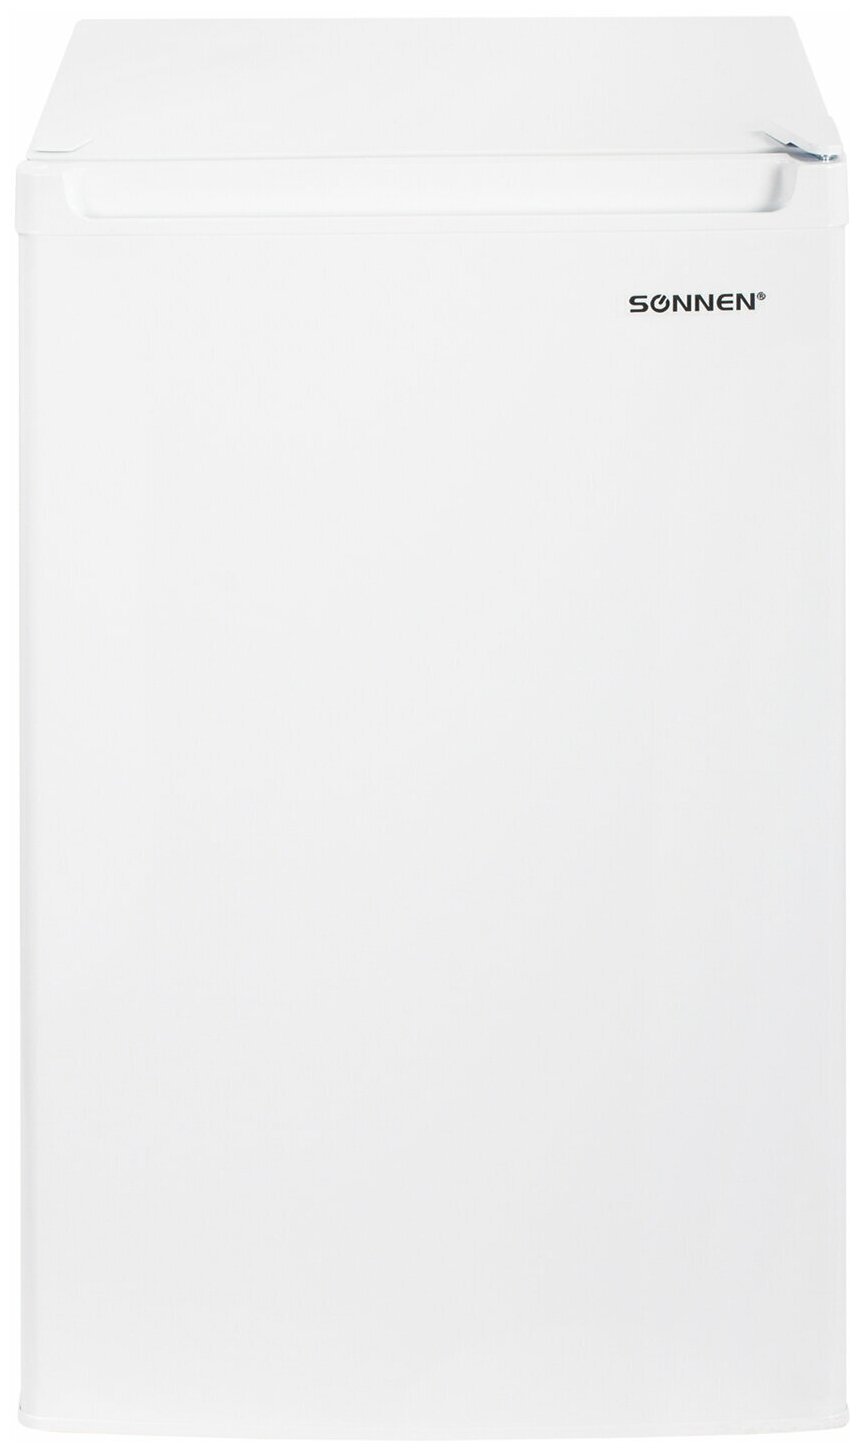 Холодильник SONNEN DF-1-15, однокамерный, объем 125 л, морозильная камера 15 л, 50×56×85 см, белый, 454791 /Квант продажи 1 ед./